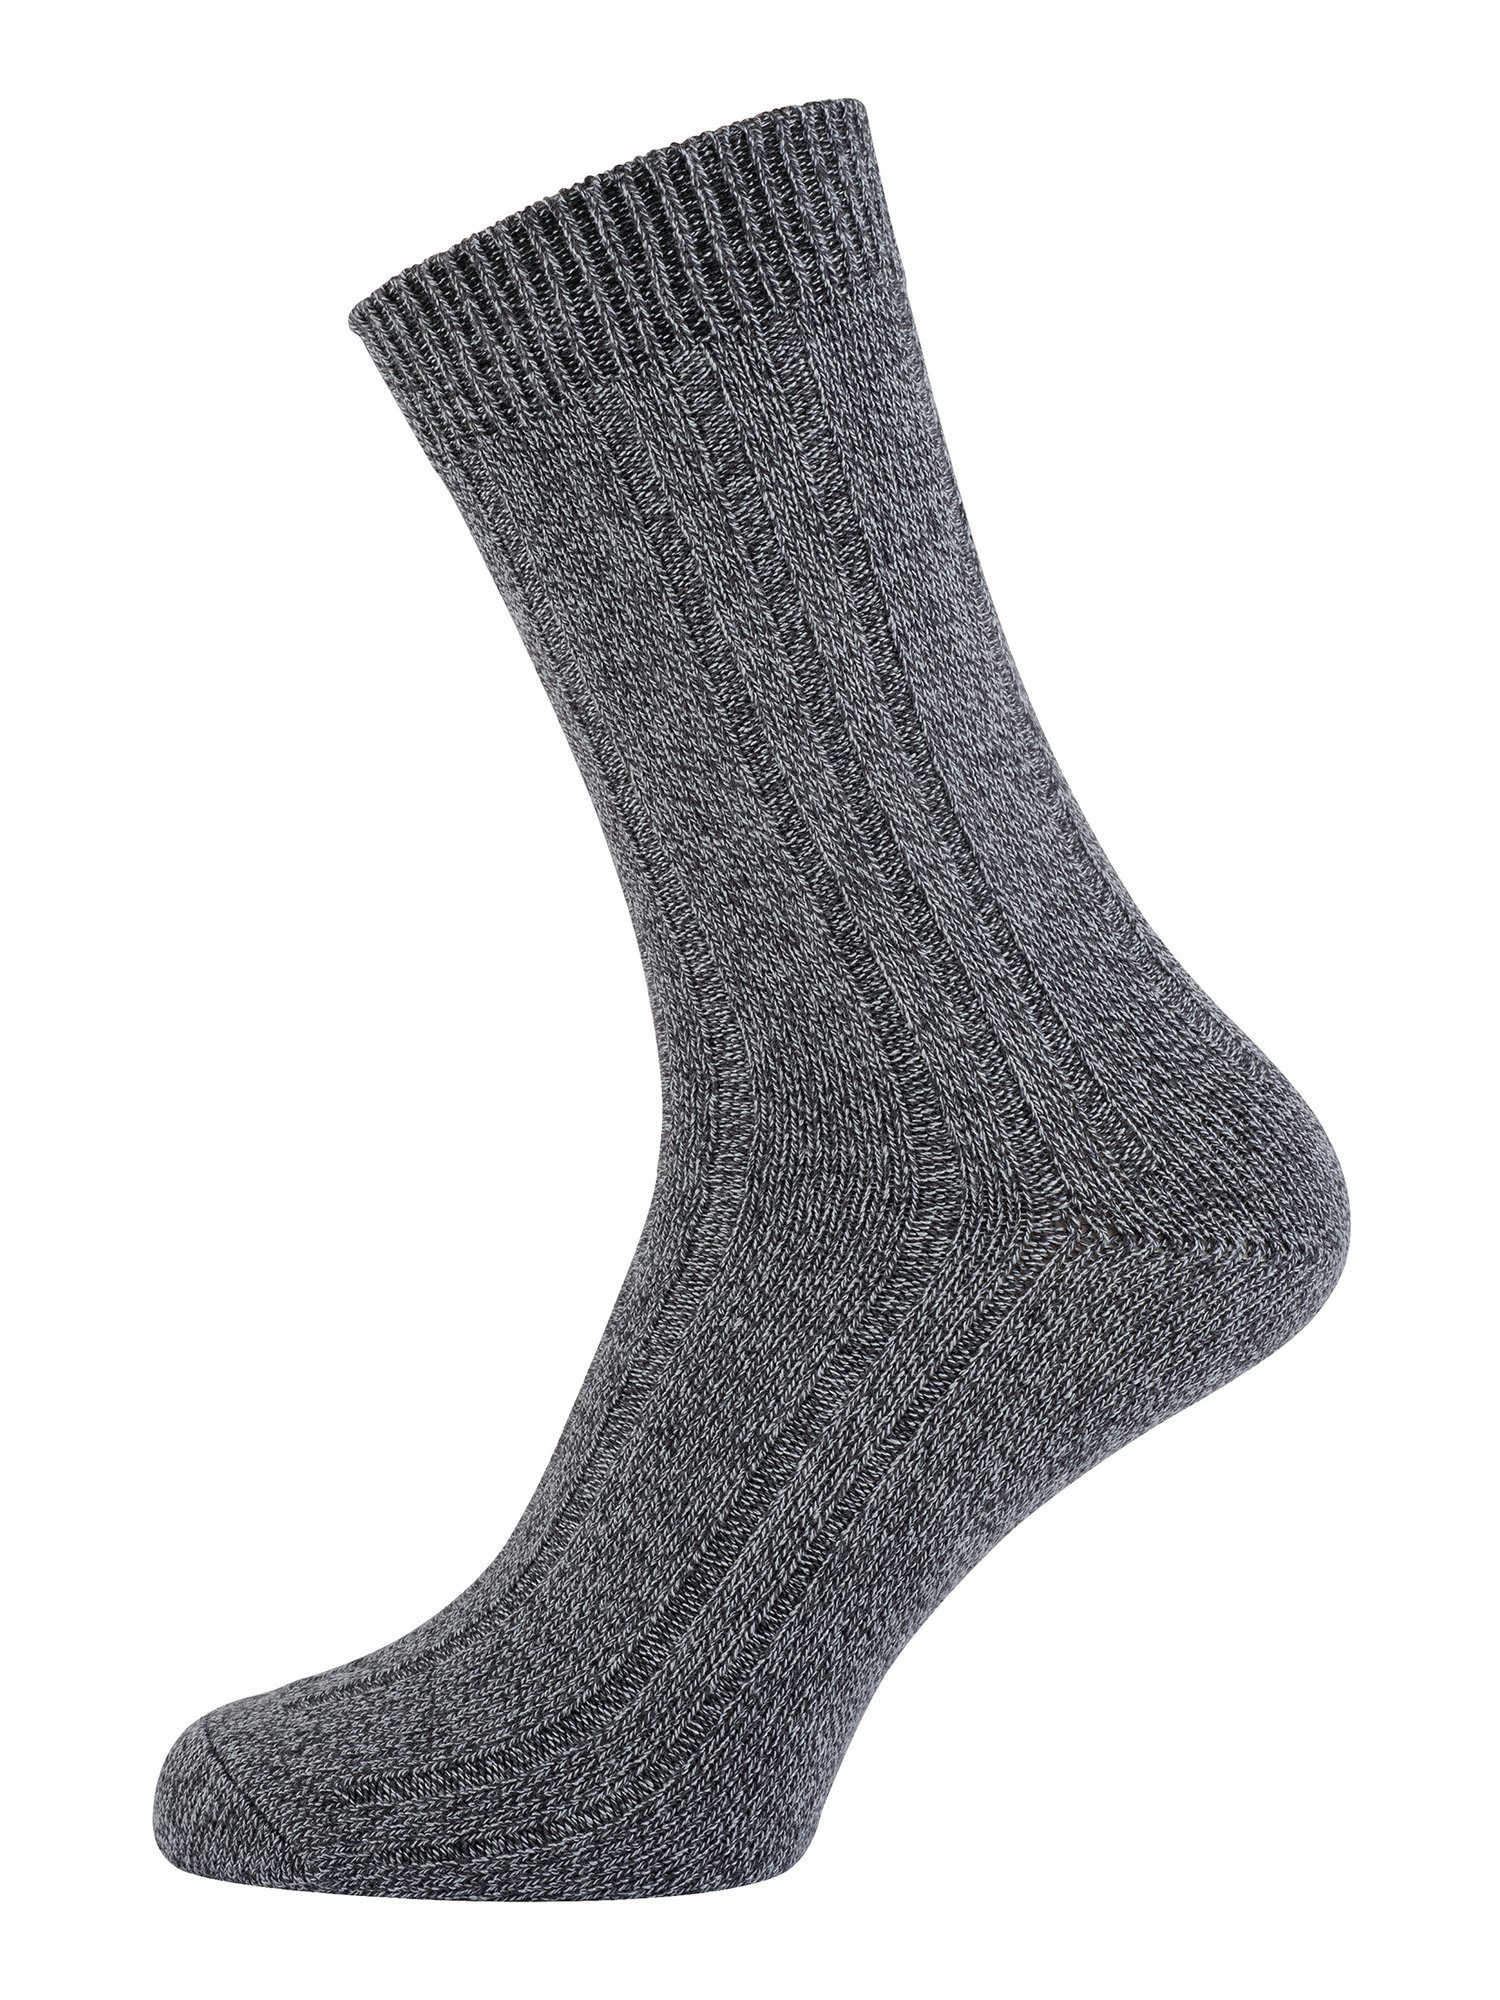 Socken Socke mittelgraumelange günstig (7-Paar) Warme Der Basicsocken uni Nur